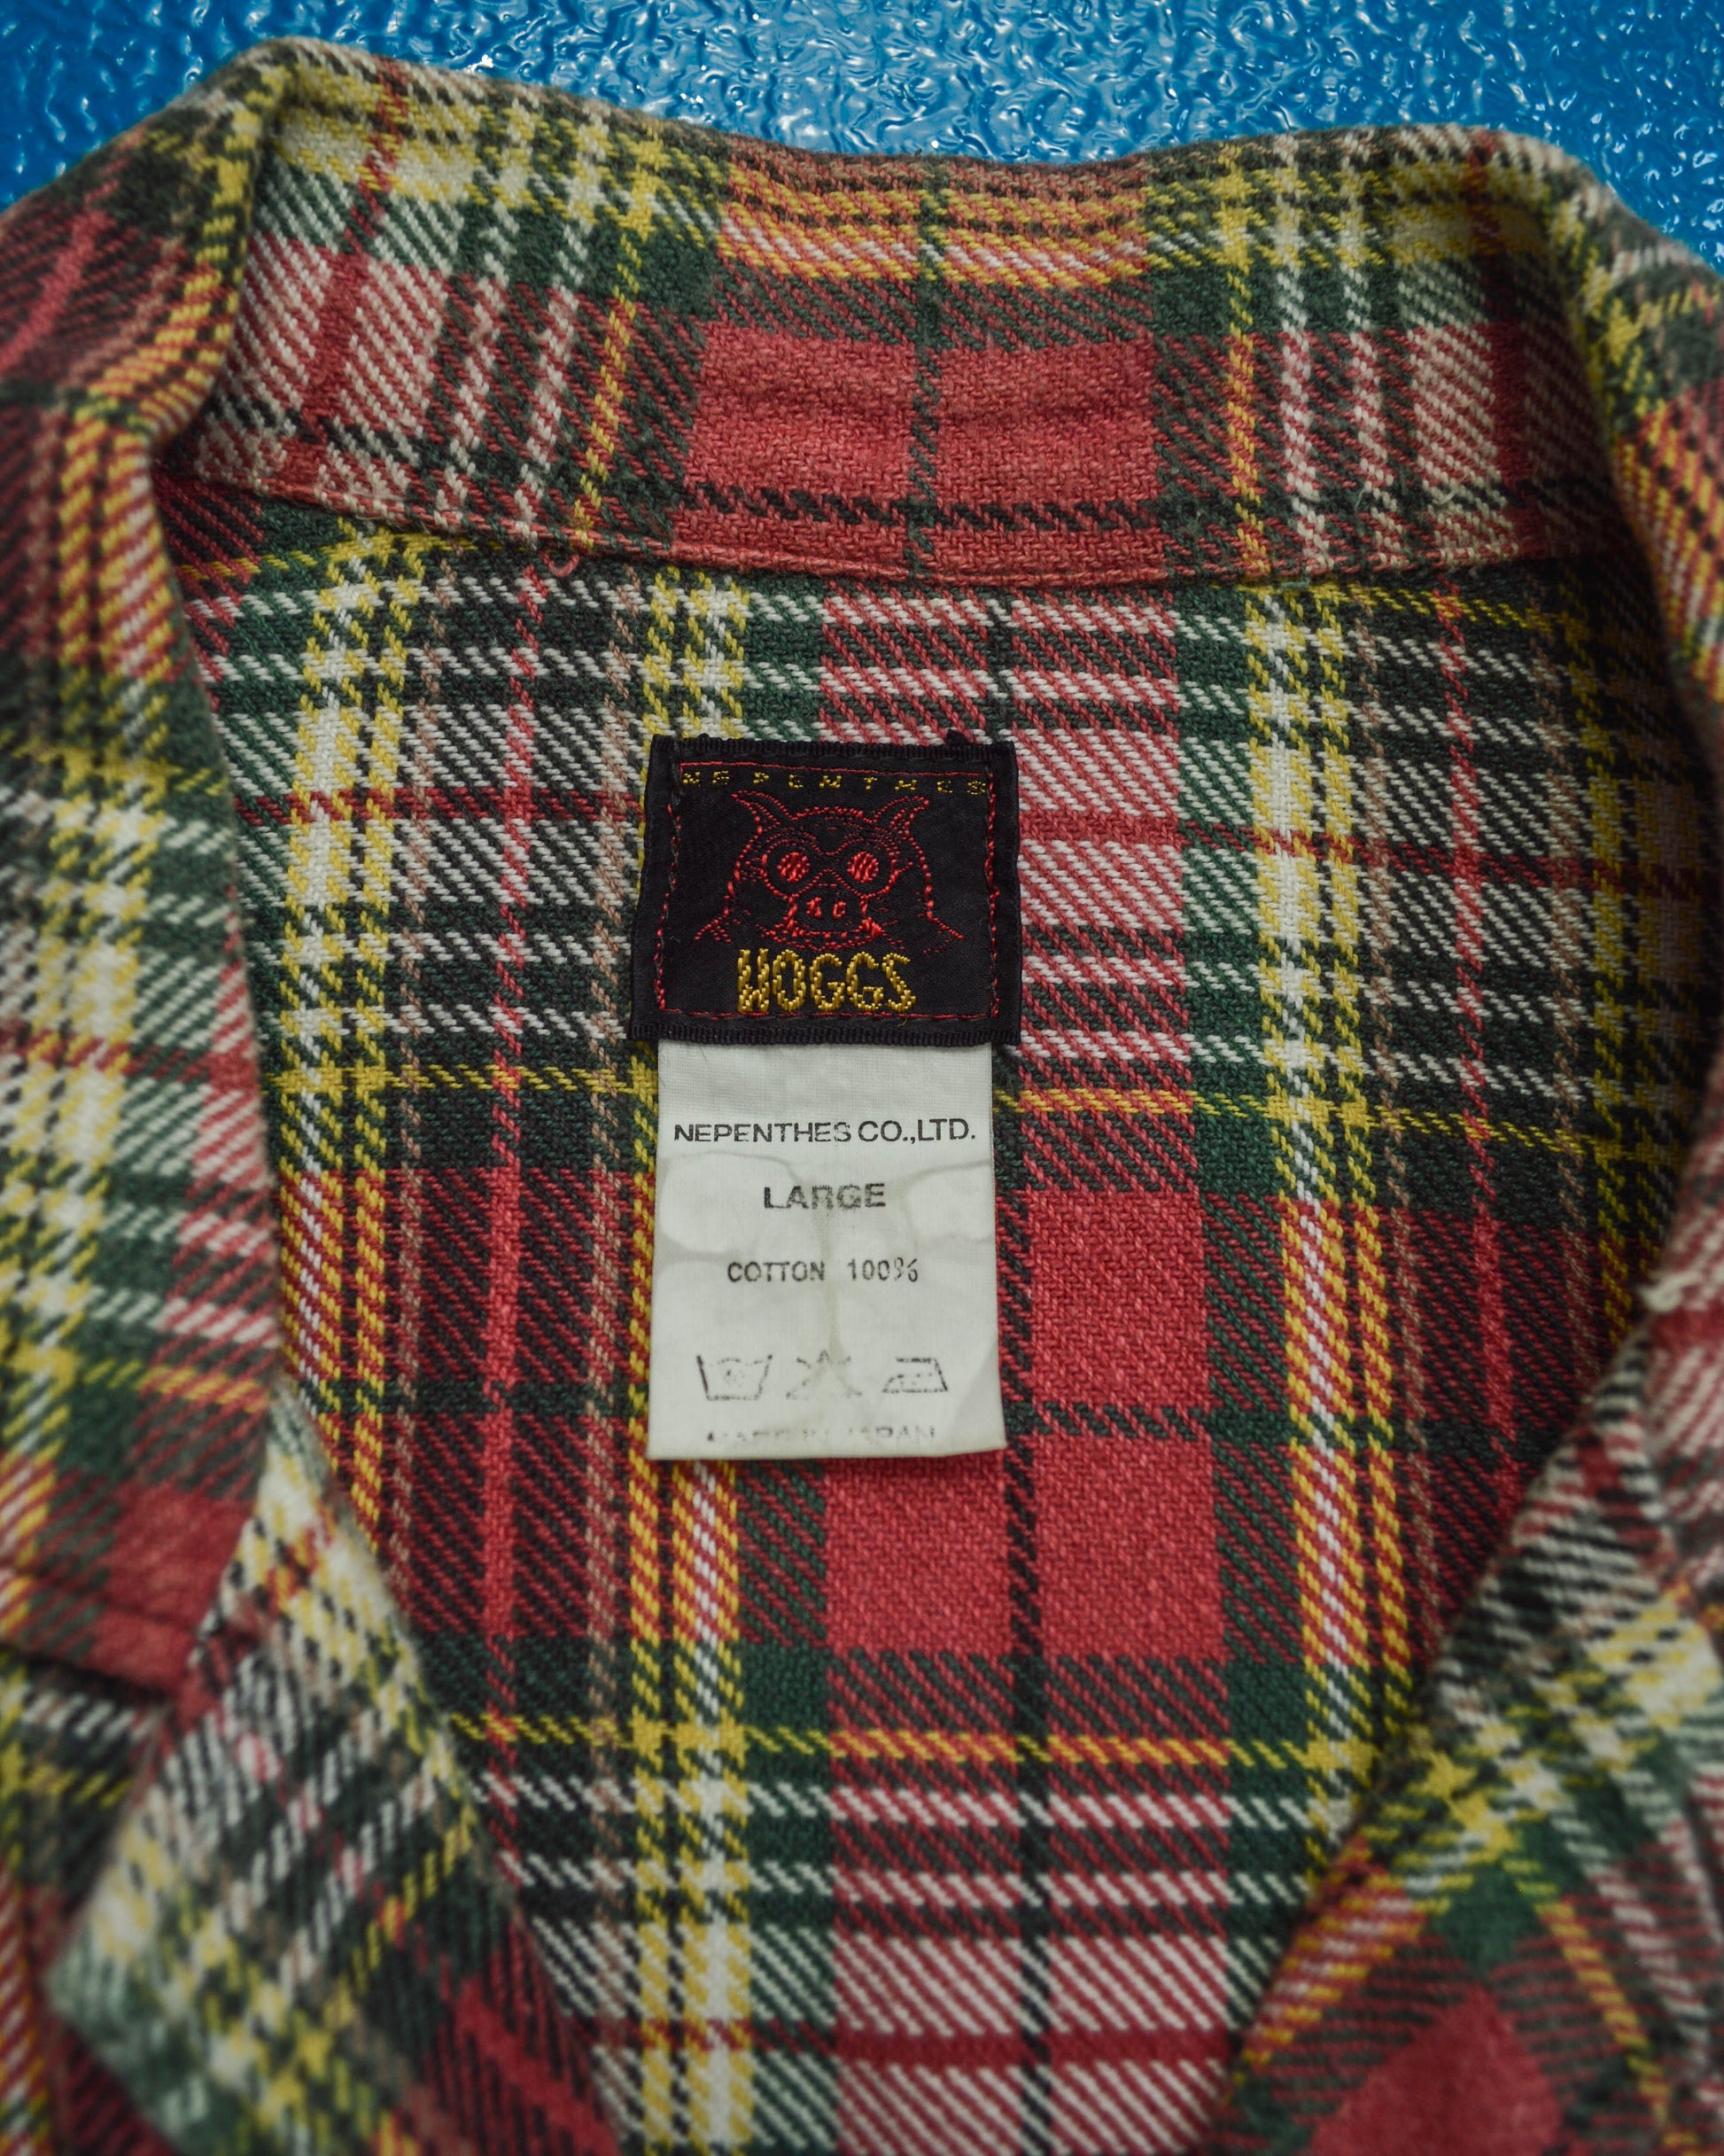 Hoggs 90s Woven Plaid Short Cotton Shirt (M~L)